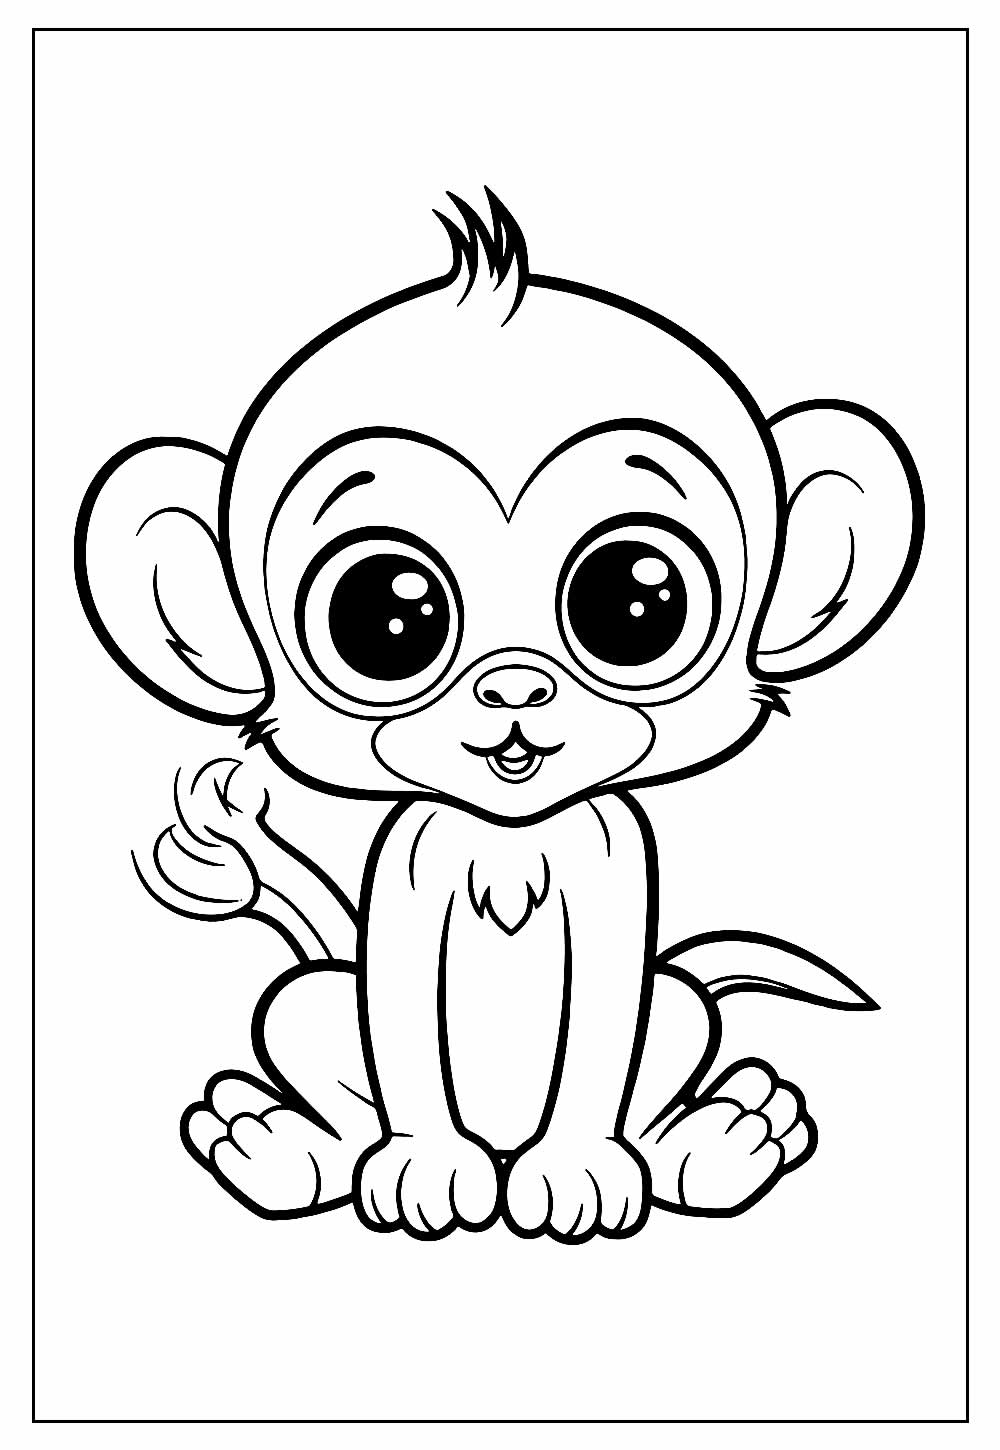 macaco em desenho